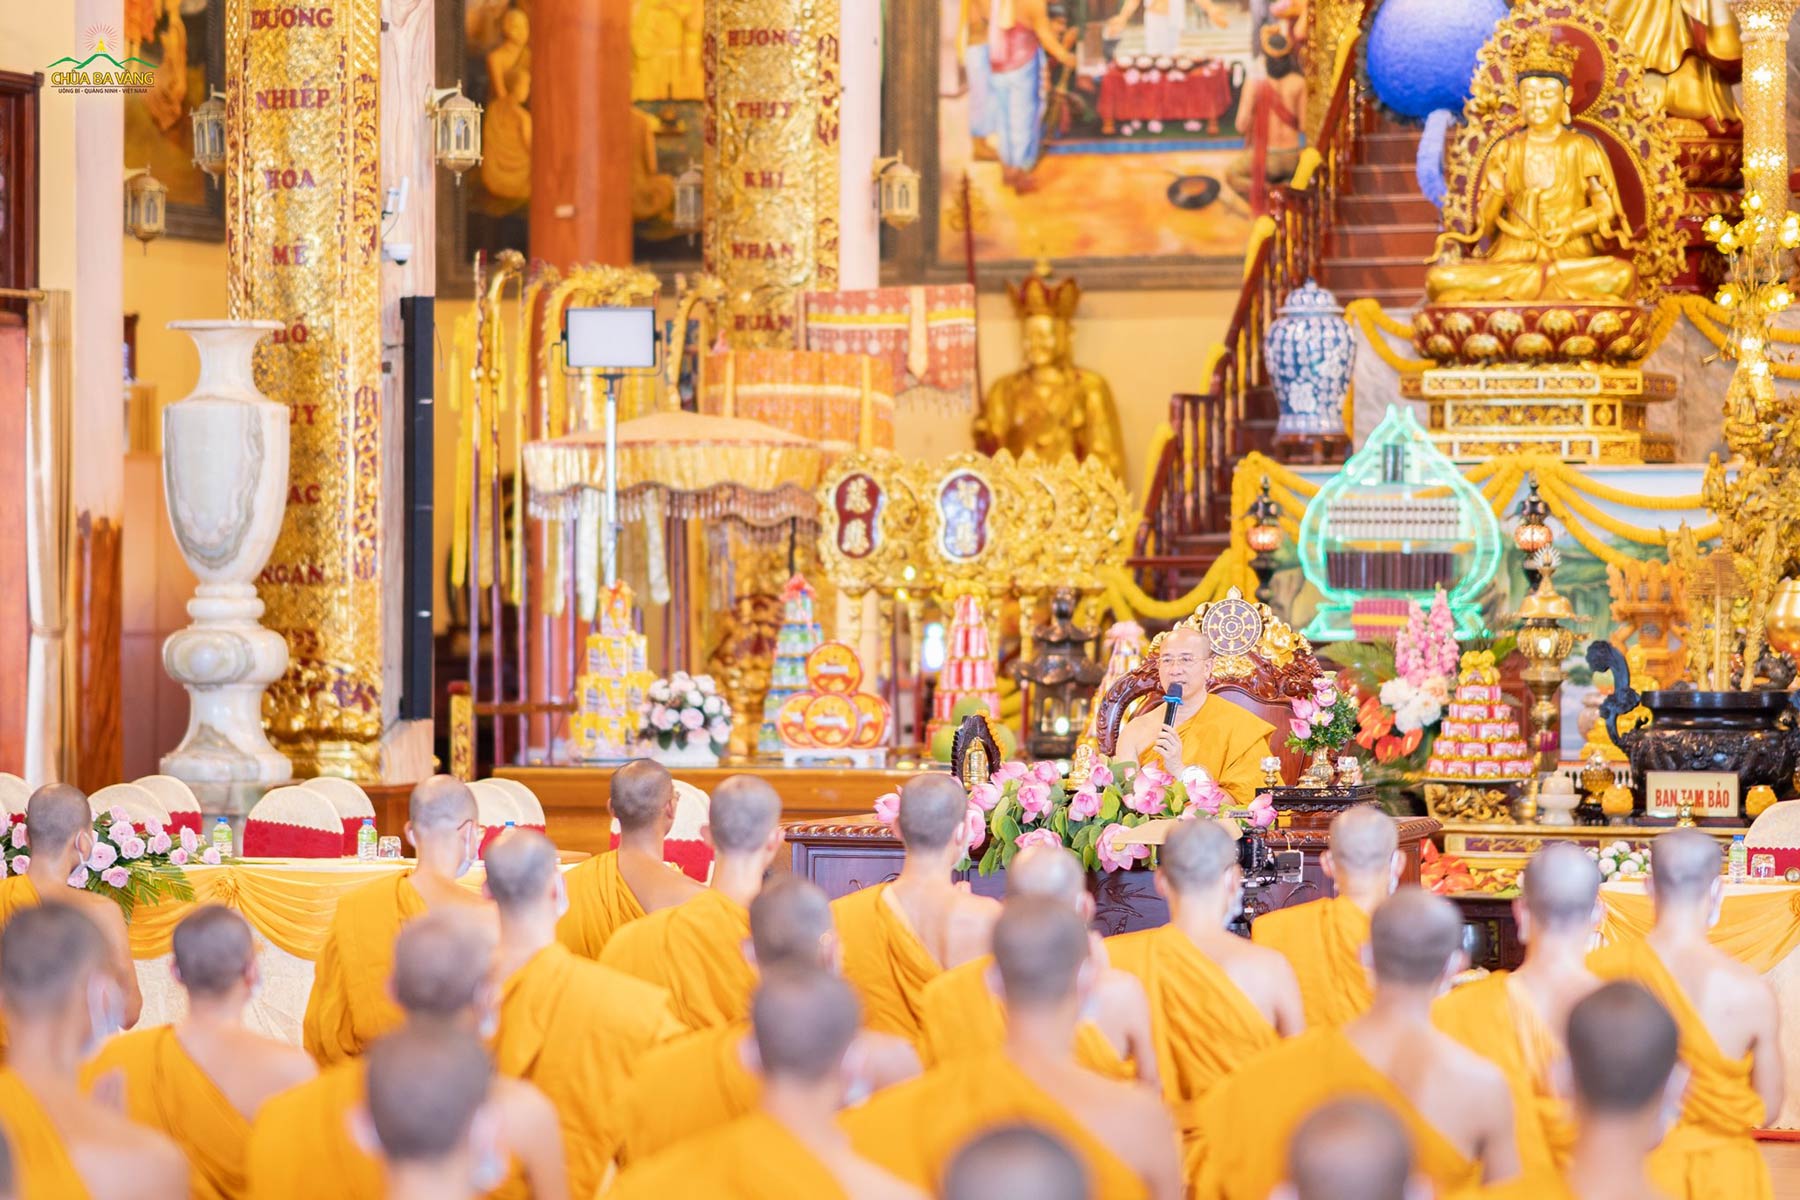 Sư Phụ từ bi ban bố những lời đạo từ cho các Phật tử